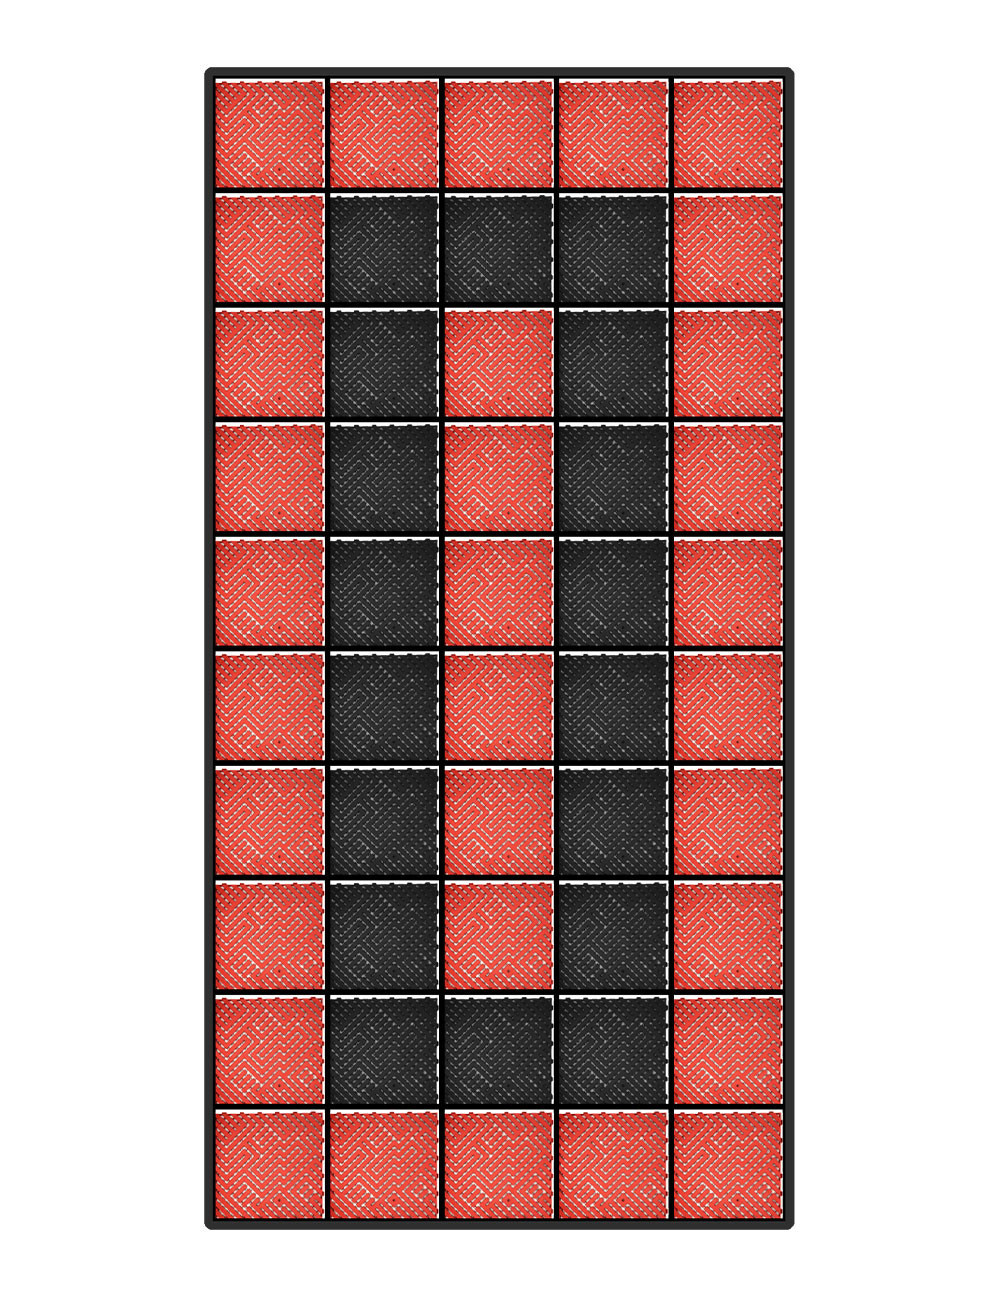 Kit dalles de sol motif racing pour voiture - 12m² - 2,5 m x 5 m - Rouge et Noir